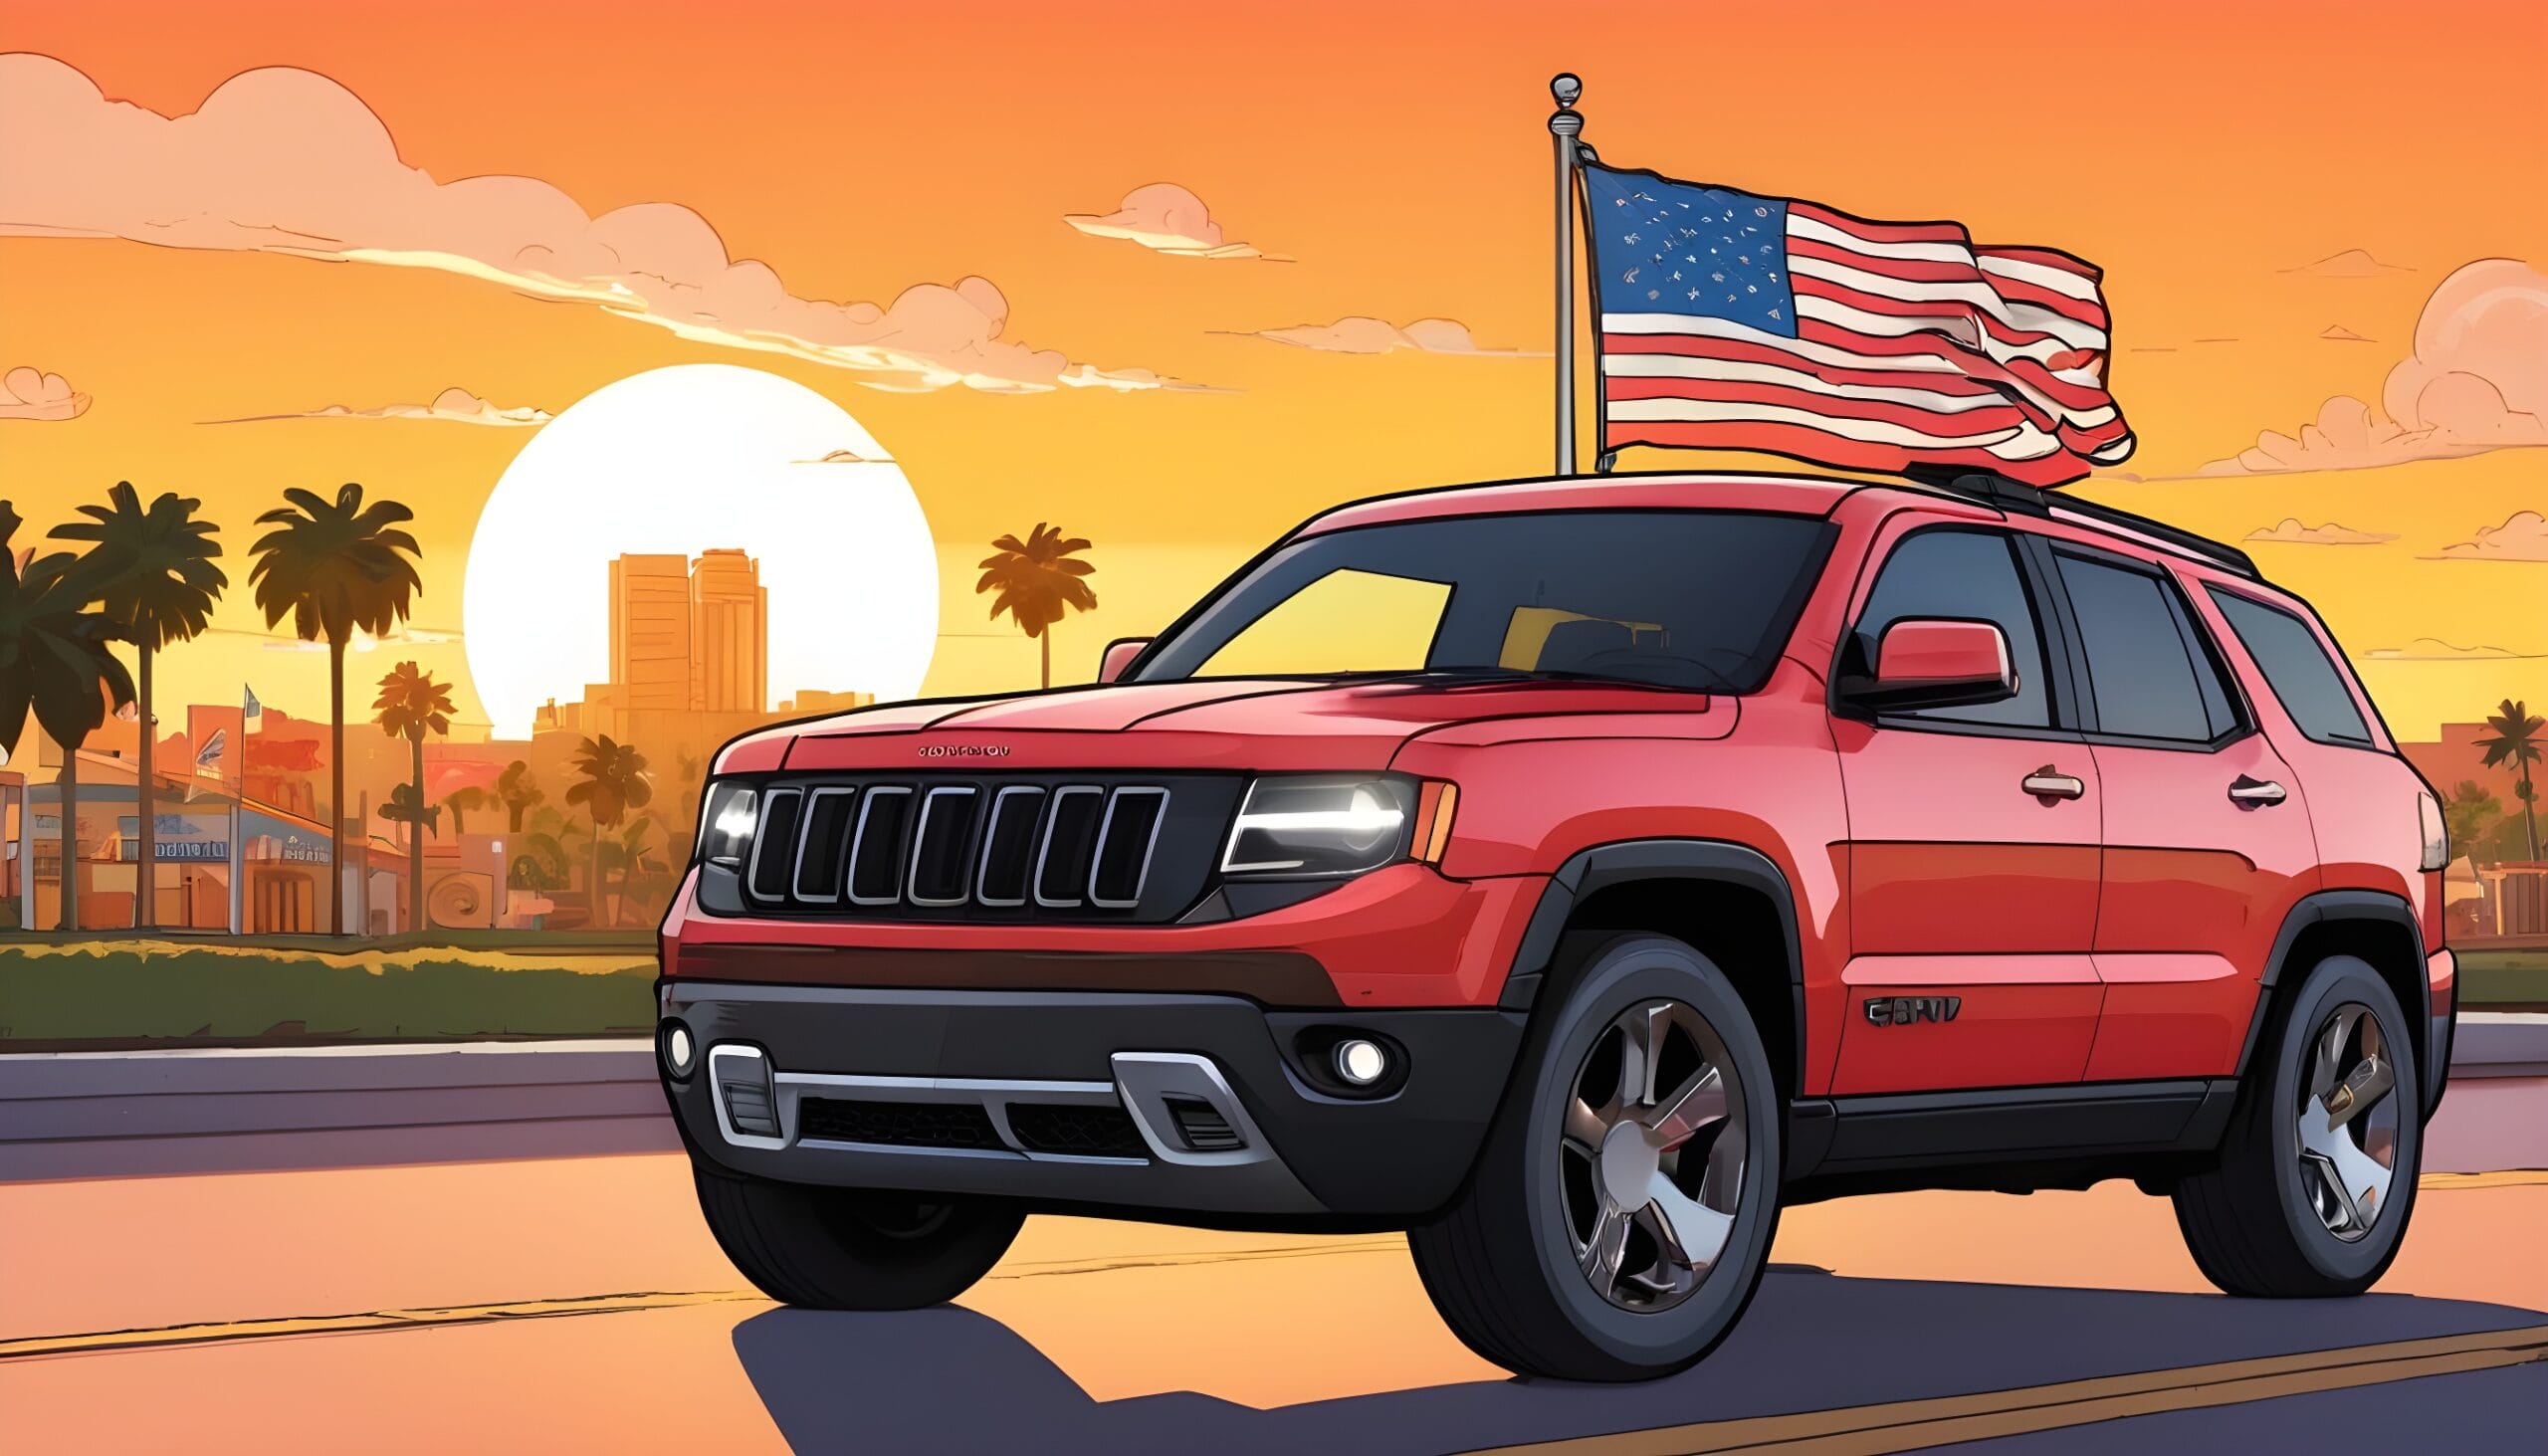 ilustracion de camioneta SUV de alquiler con la bandera de estados unidos detras